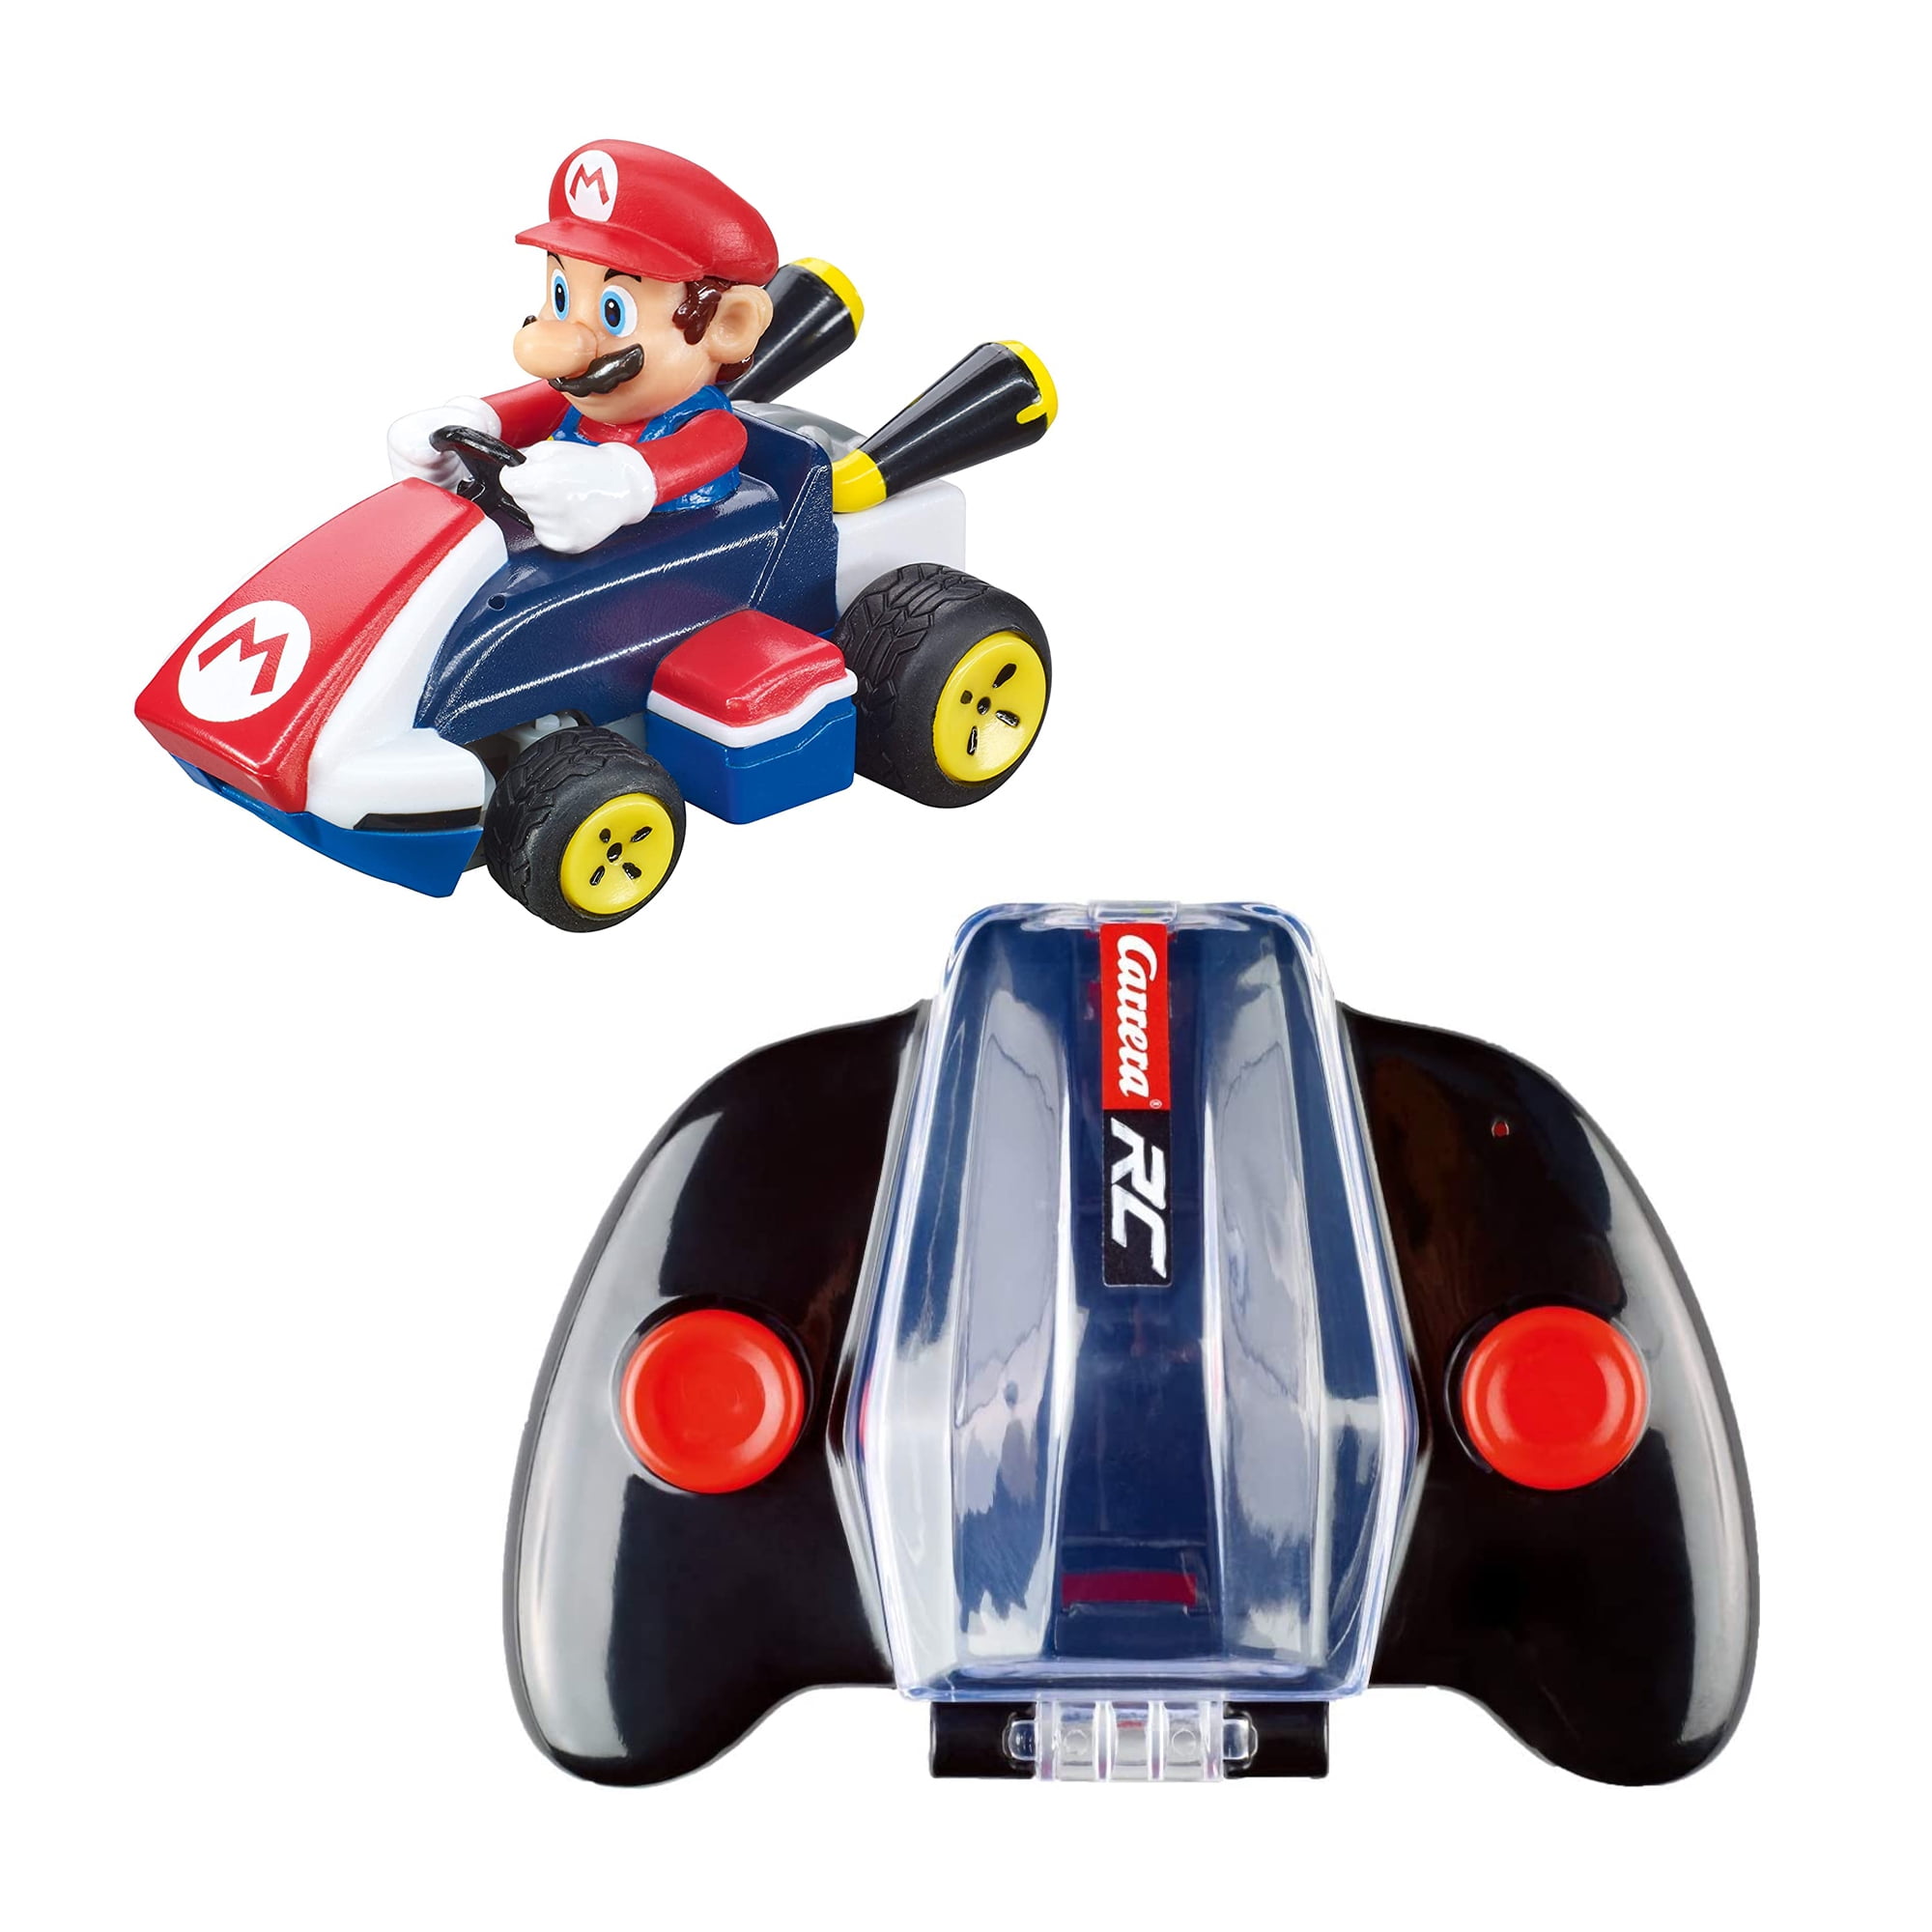 Carrera Officially Licensed Nintendo Mario Kart Remote Control Car, Mario -  